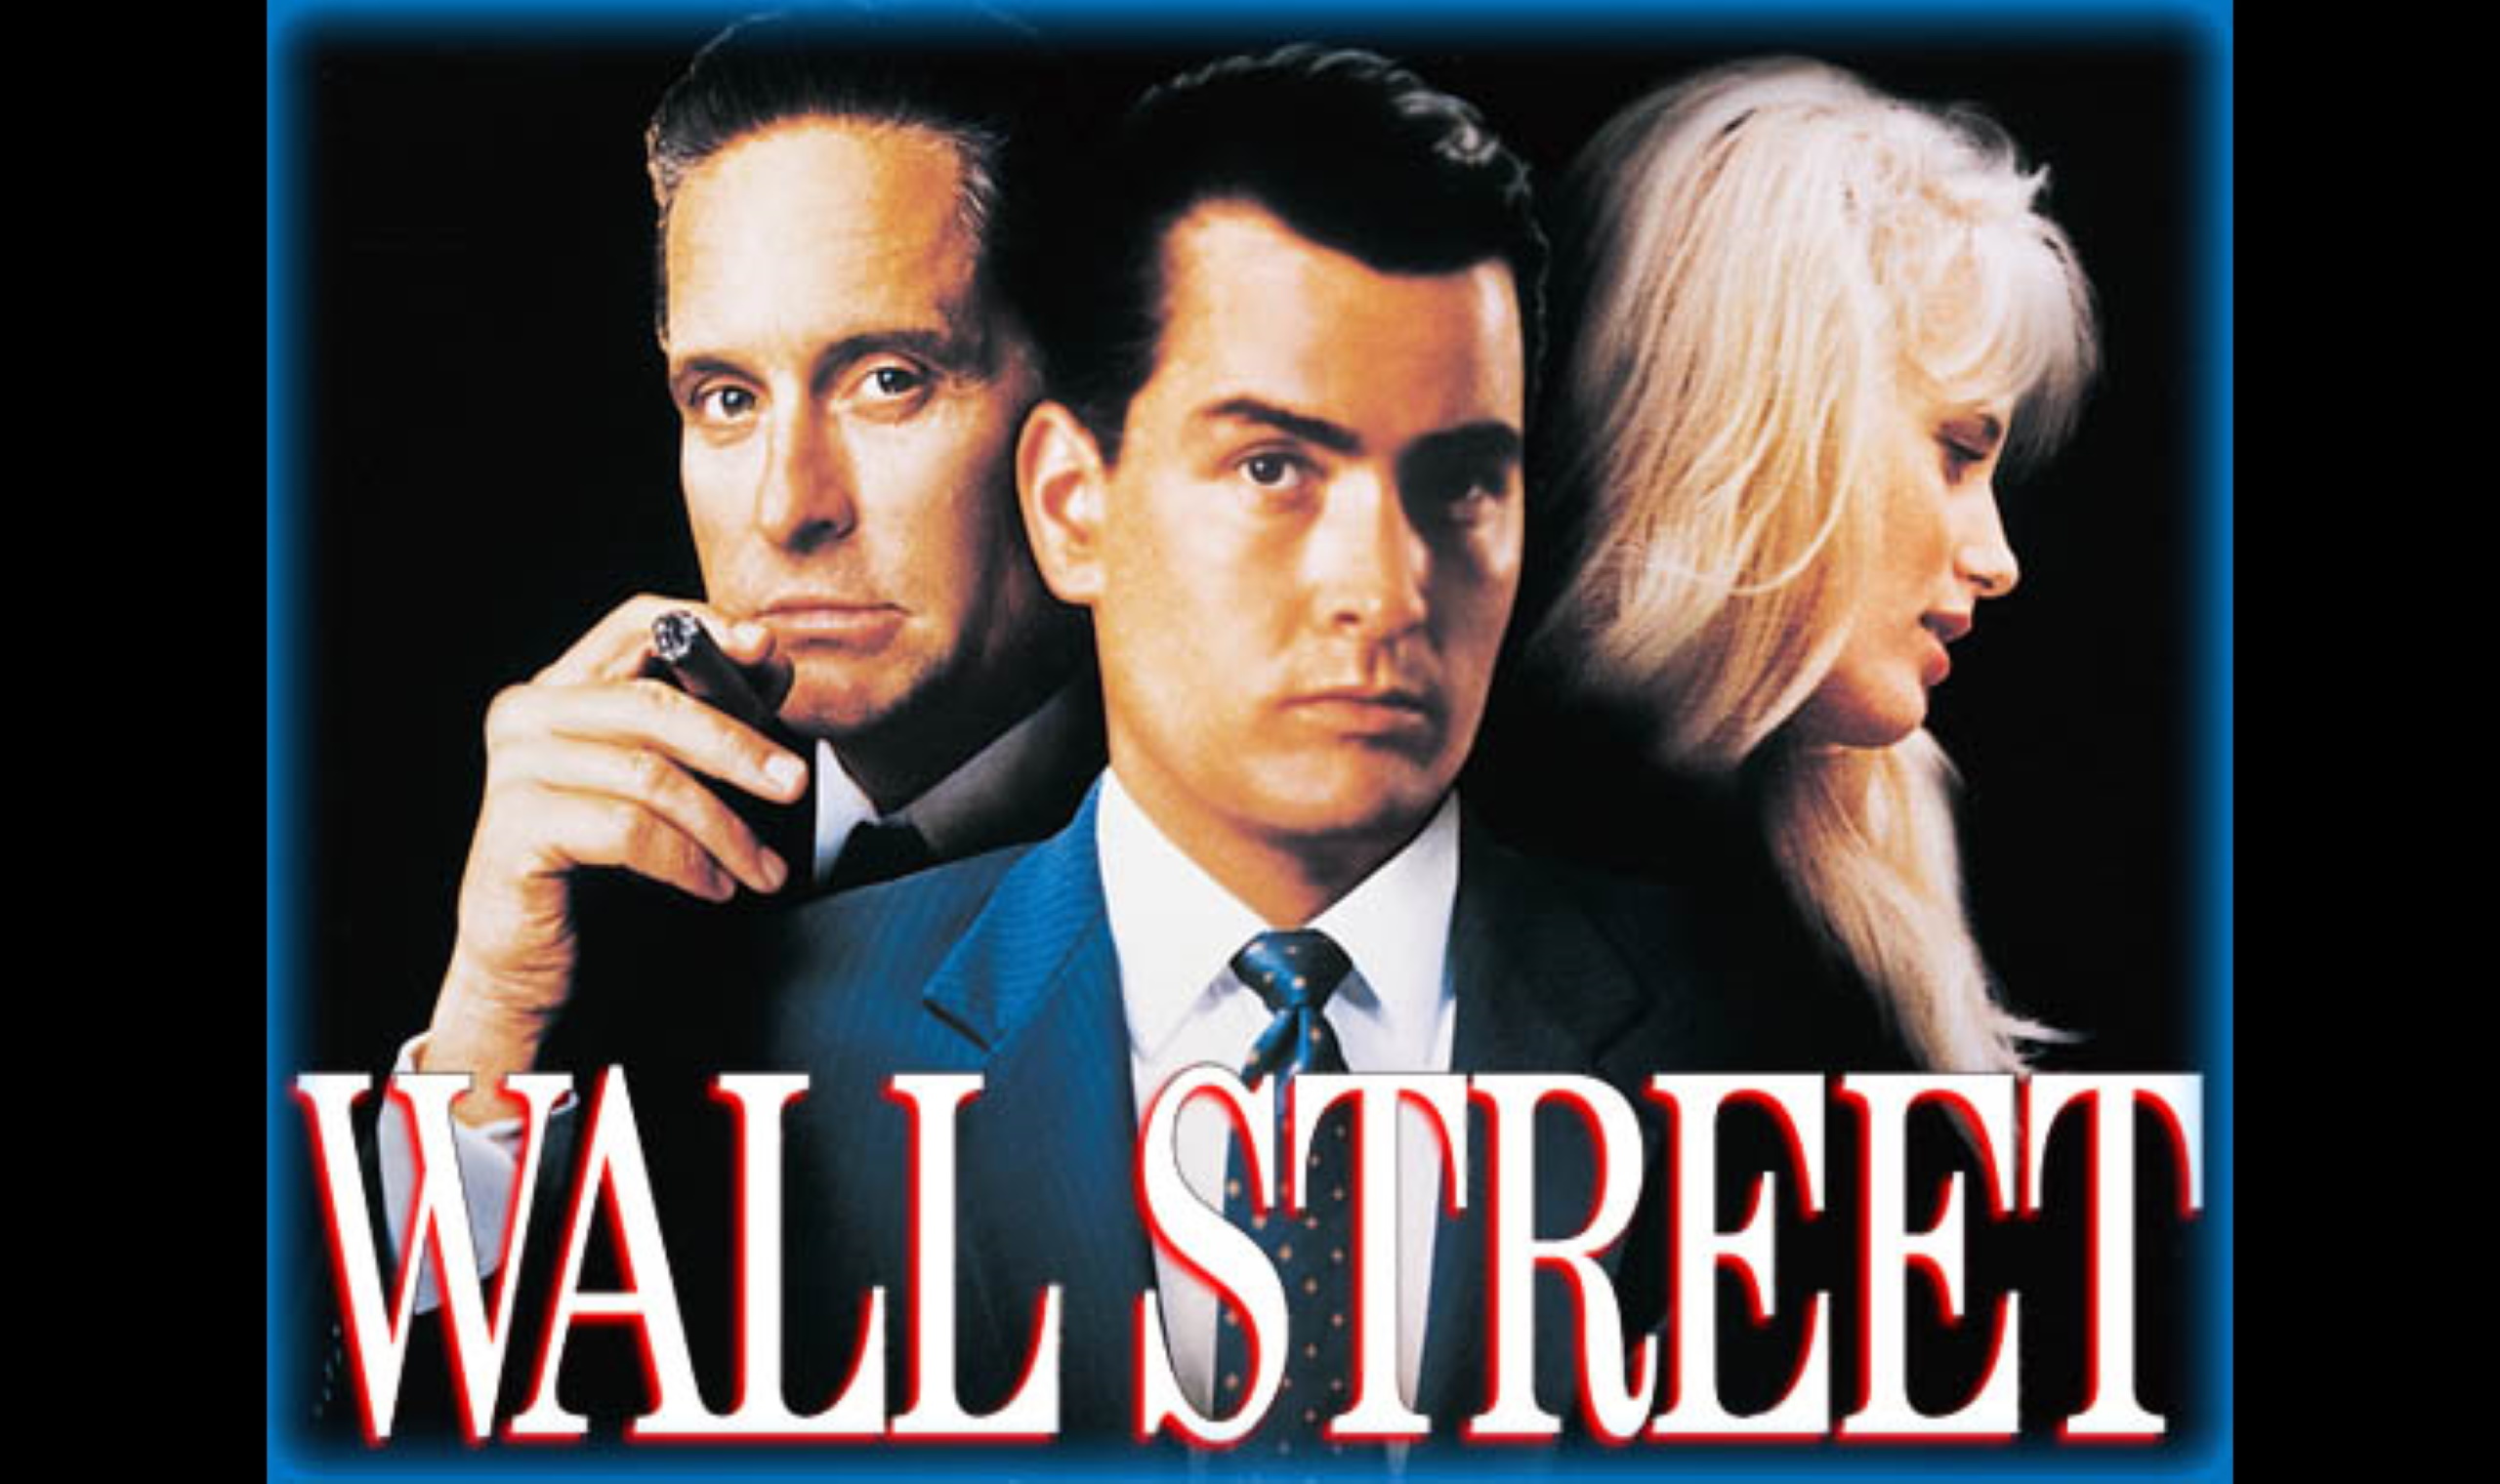 Wall Street, 1987 movie, Stanley Weiser, Oliver Stone, Financial critique, 2560x1520 HD Desktop